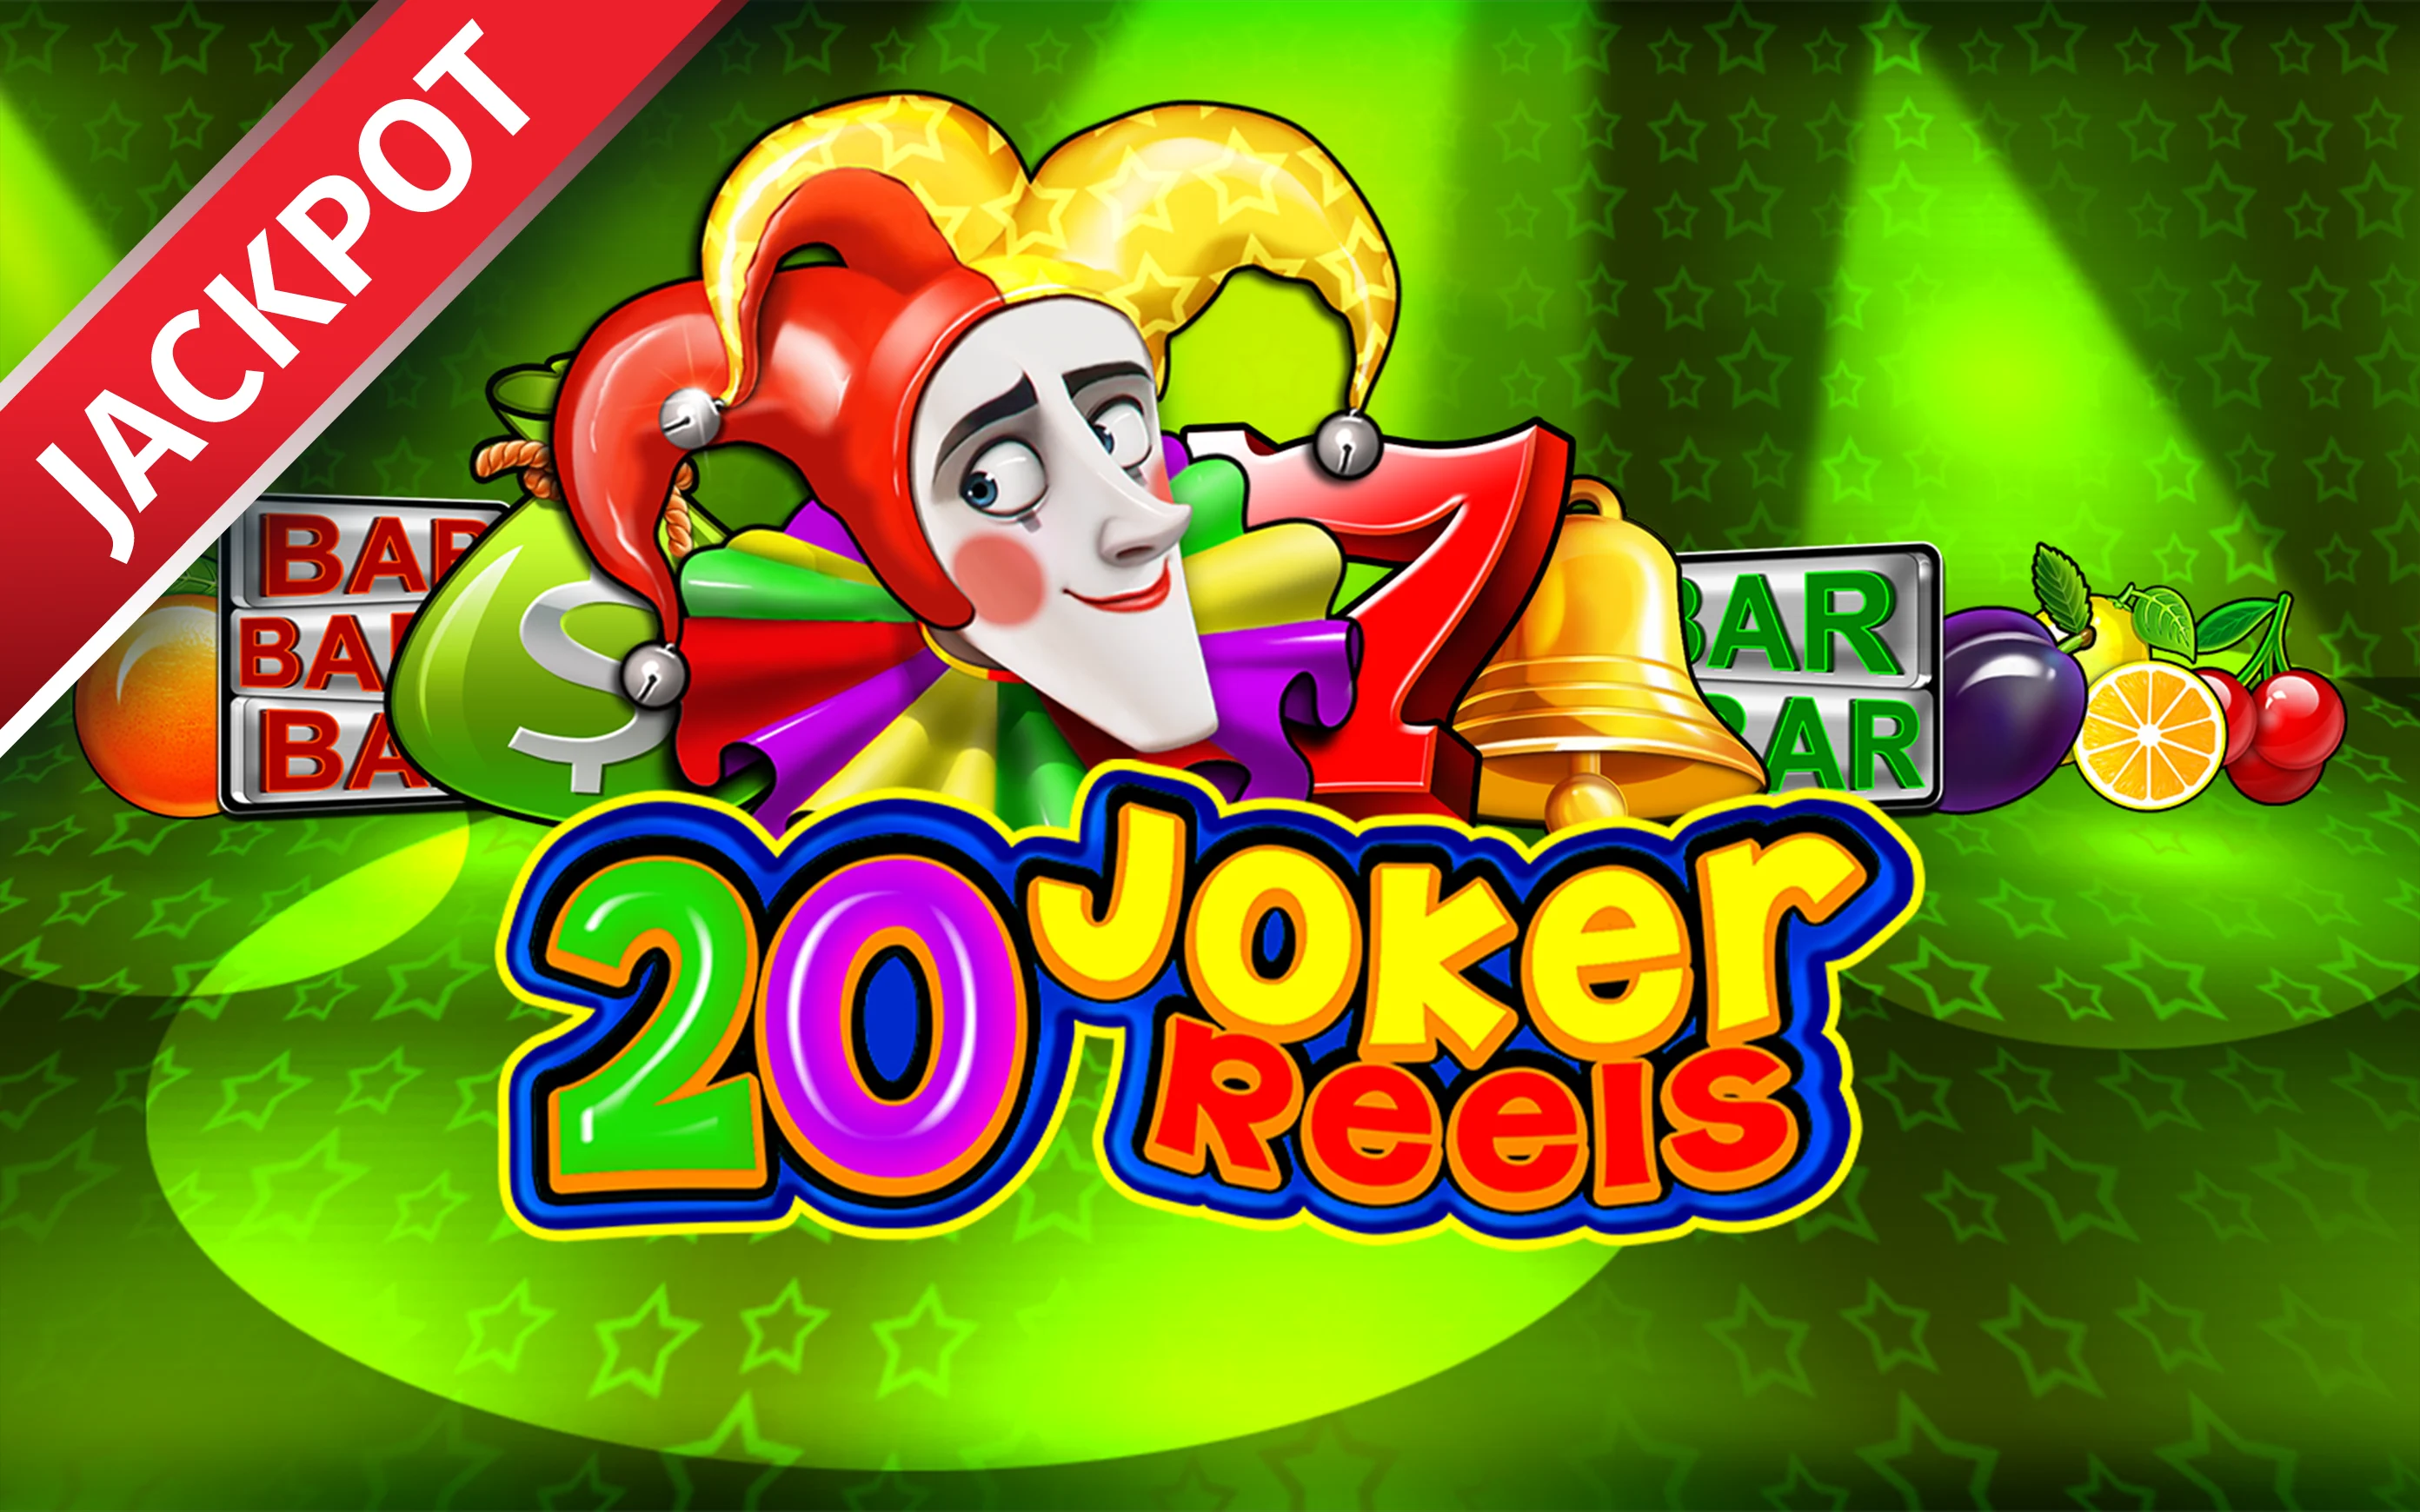 Joacă 20 Joker Reels în cazinoul online Starcasino.be